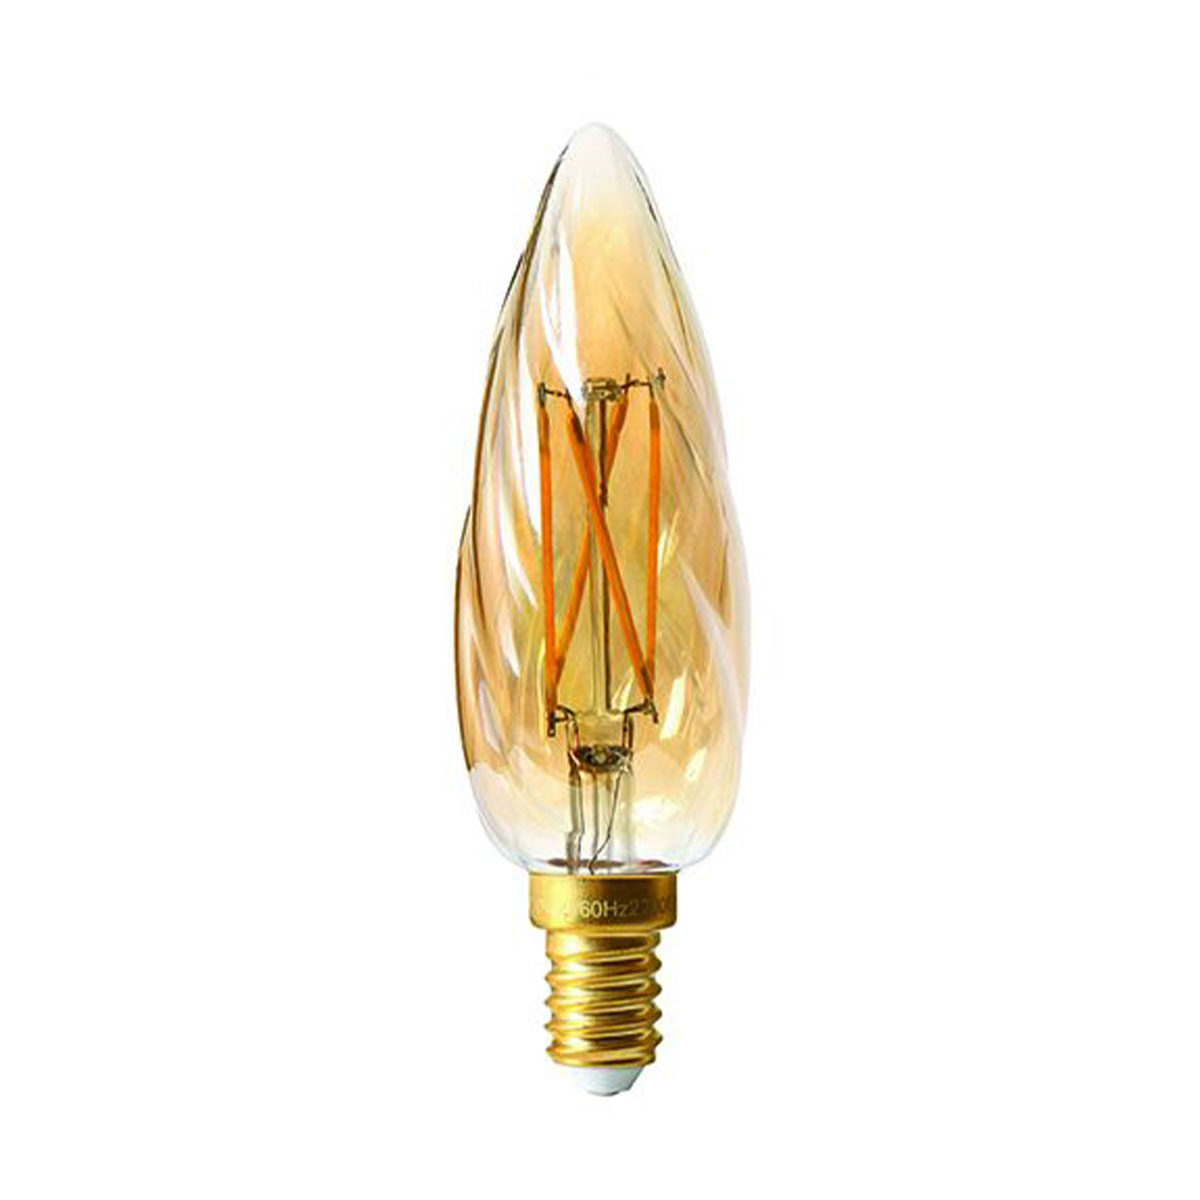 Flamme Torsadée F6 LED 4W E14 2500K 280lm amber dimmbar